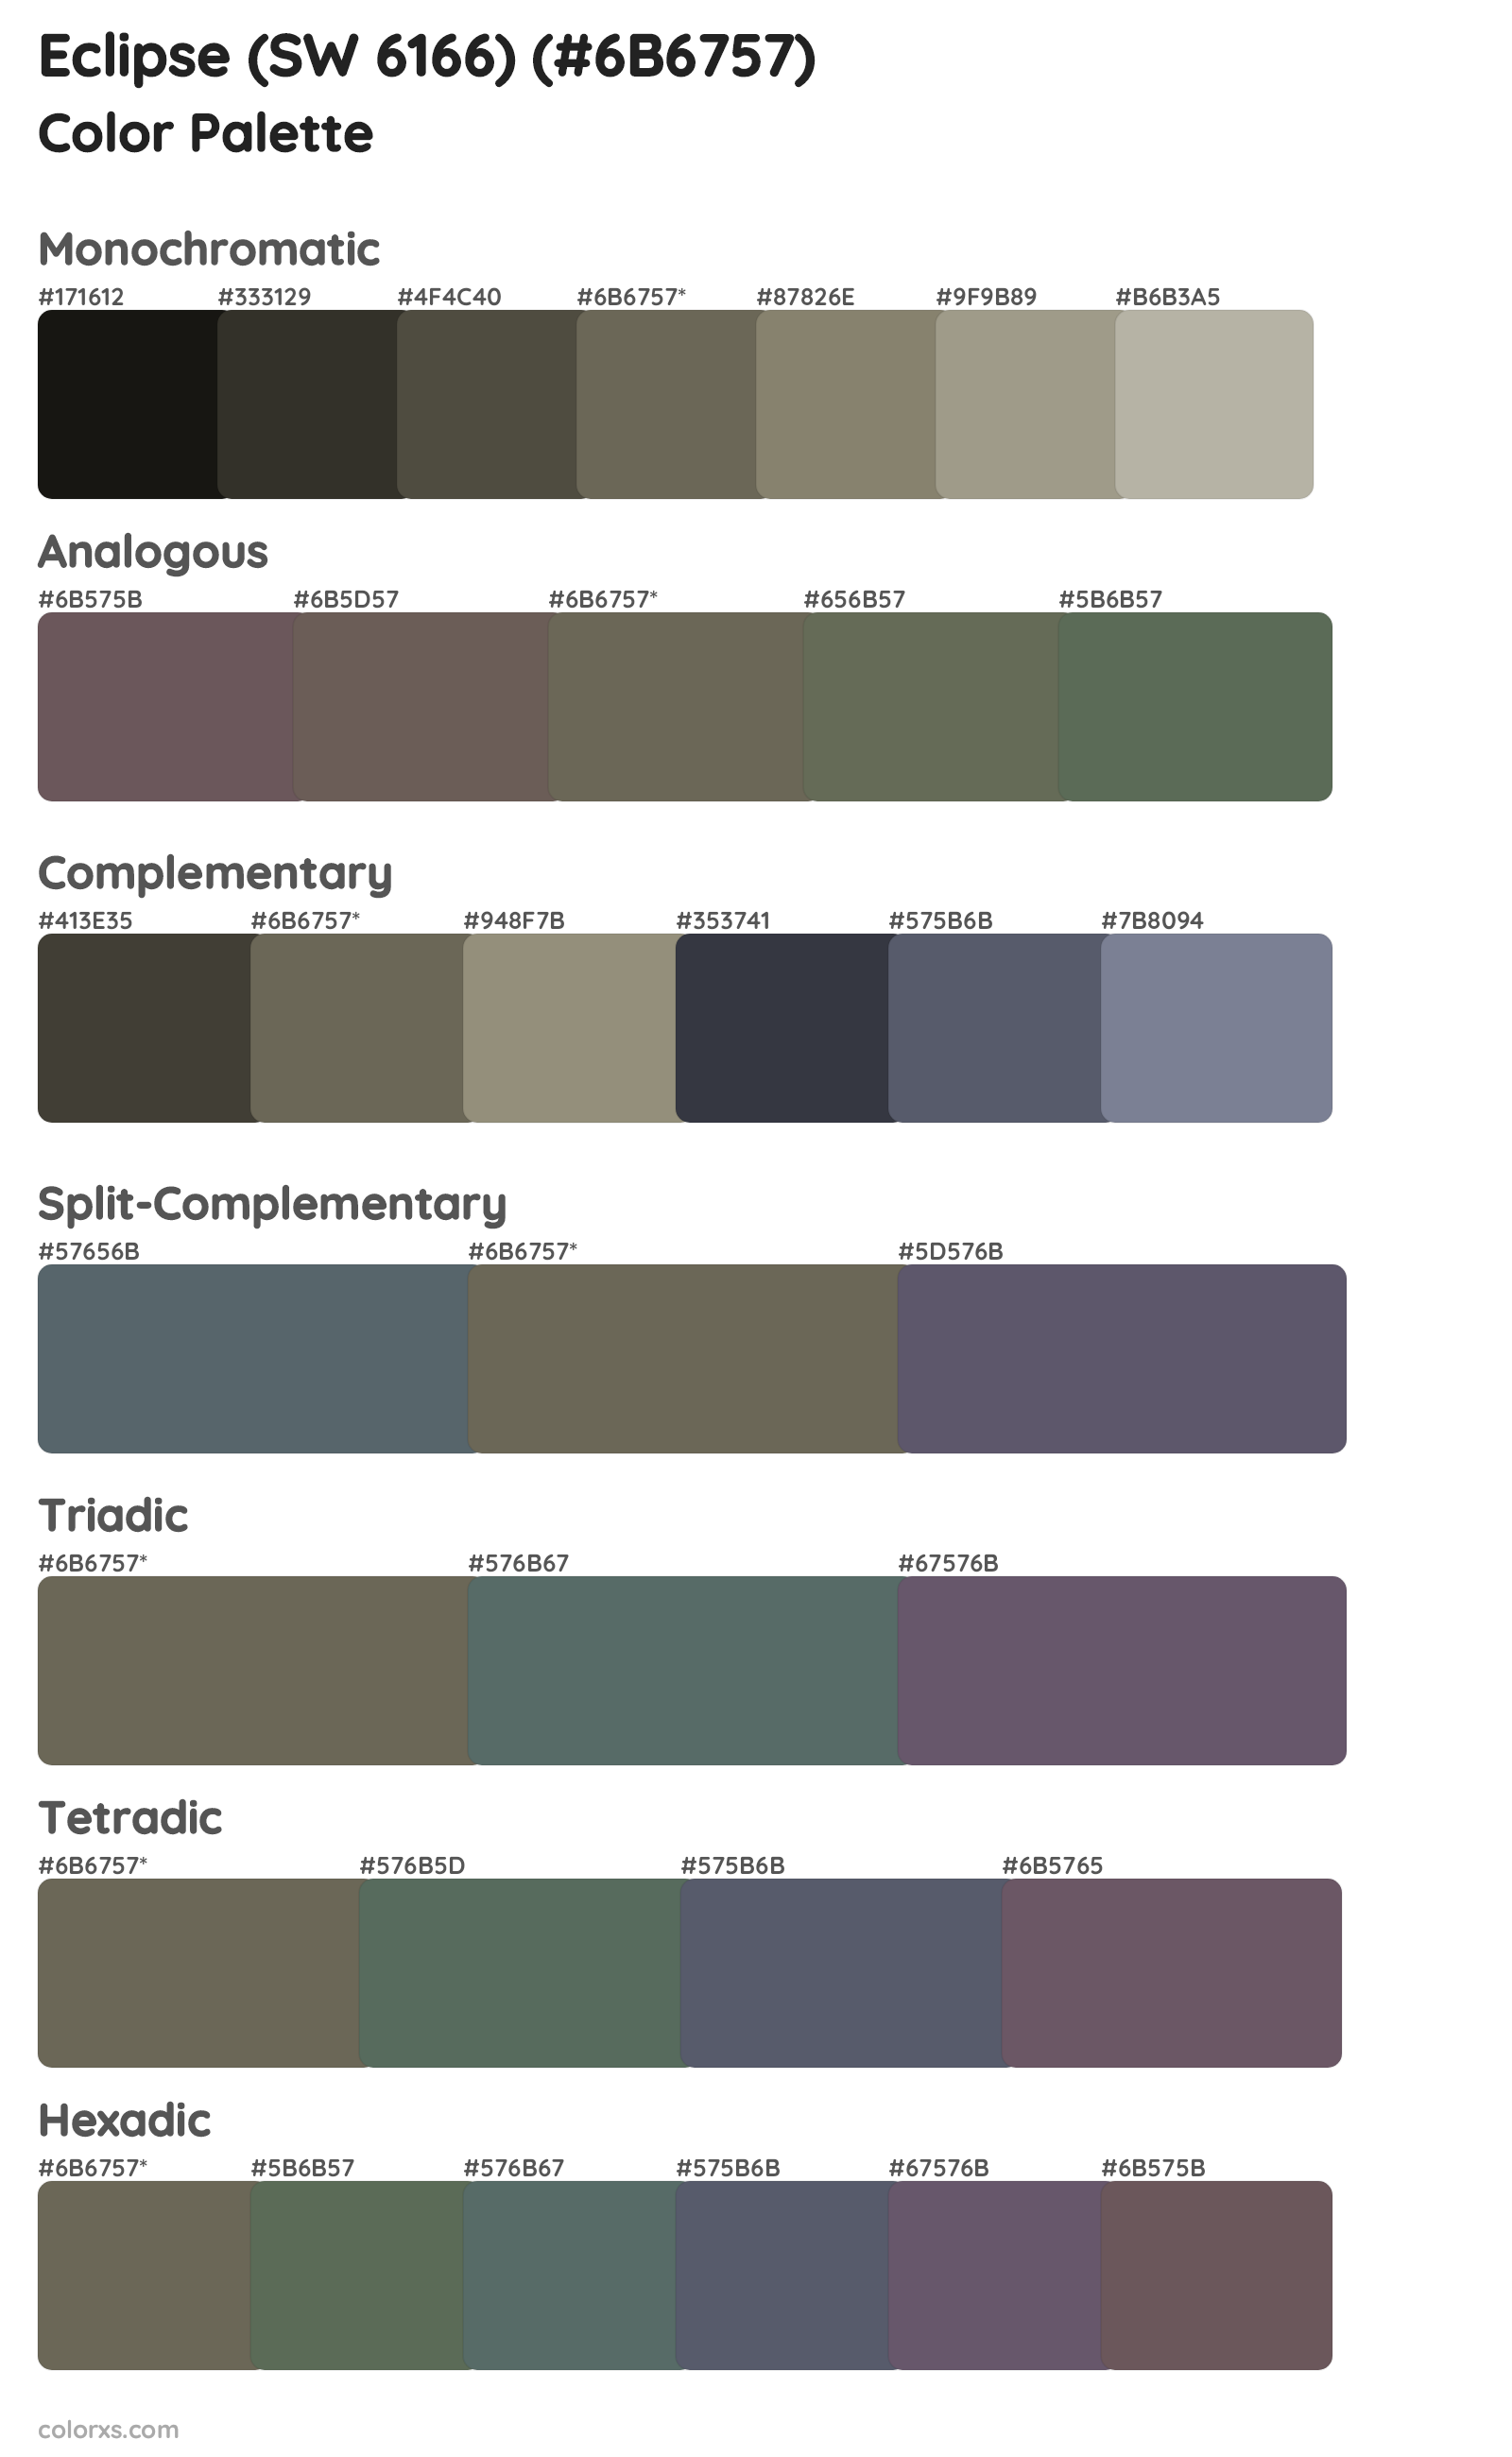 Eclipse (SW 6166) Color Scheme Palettes